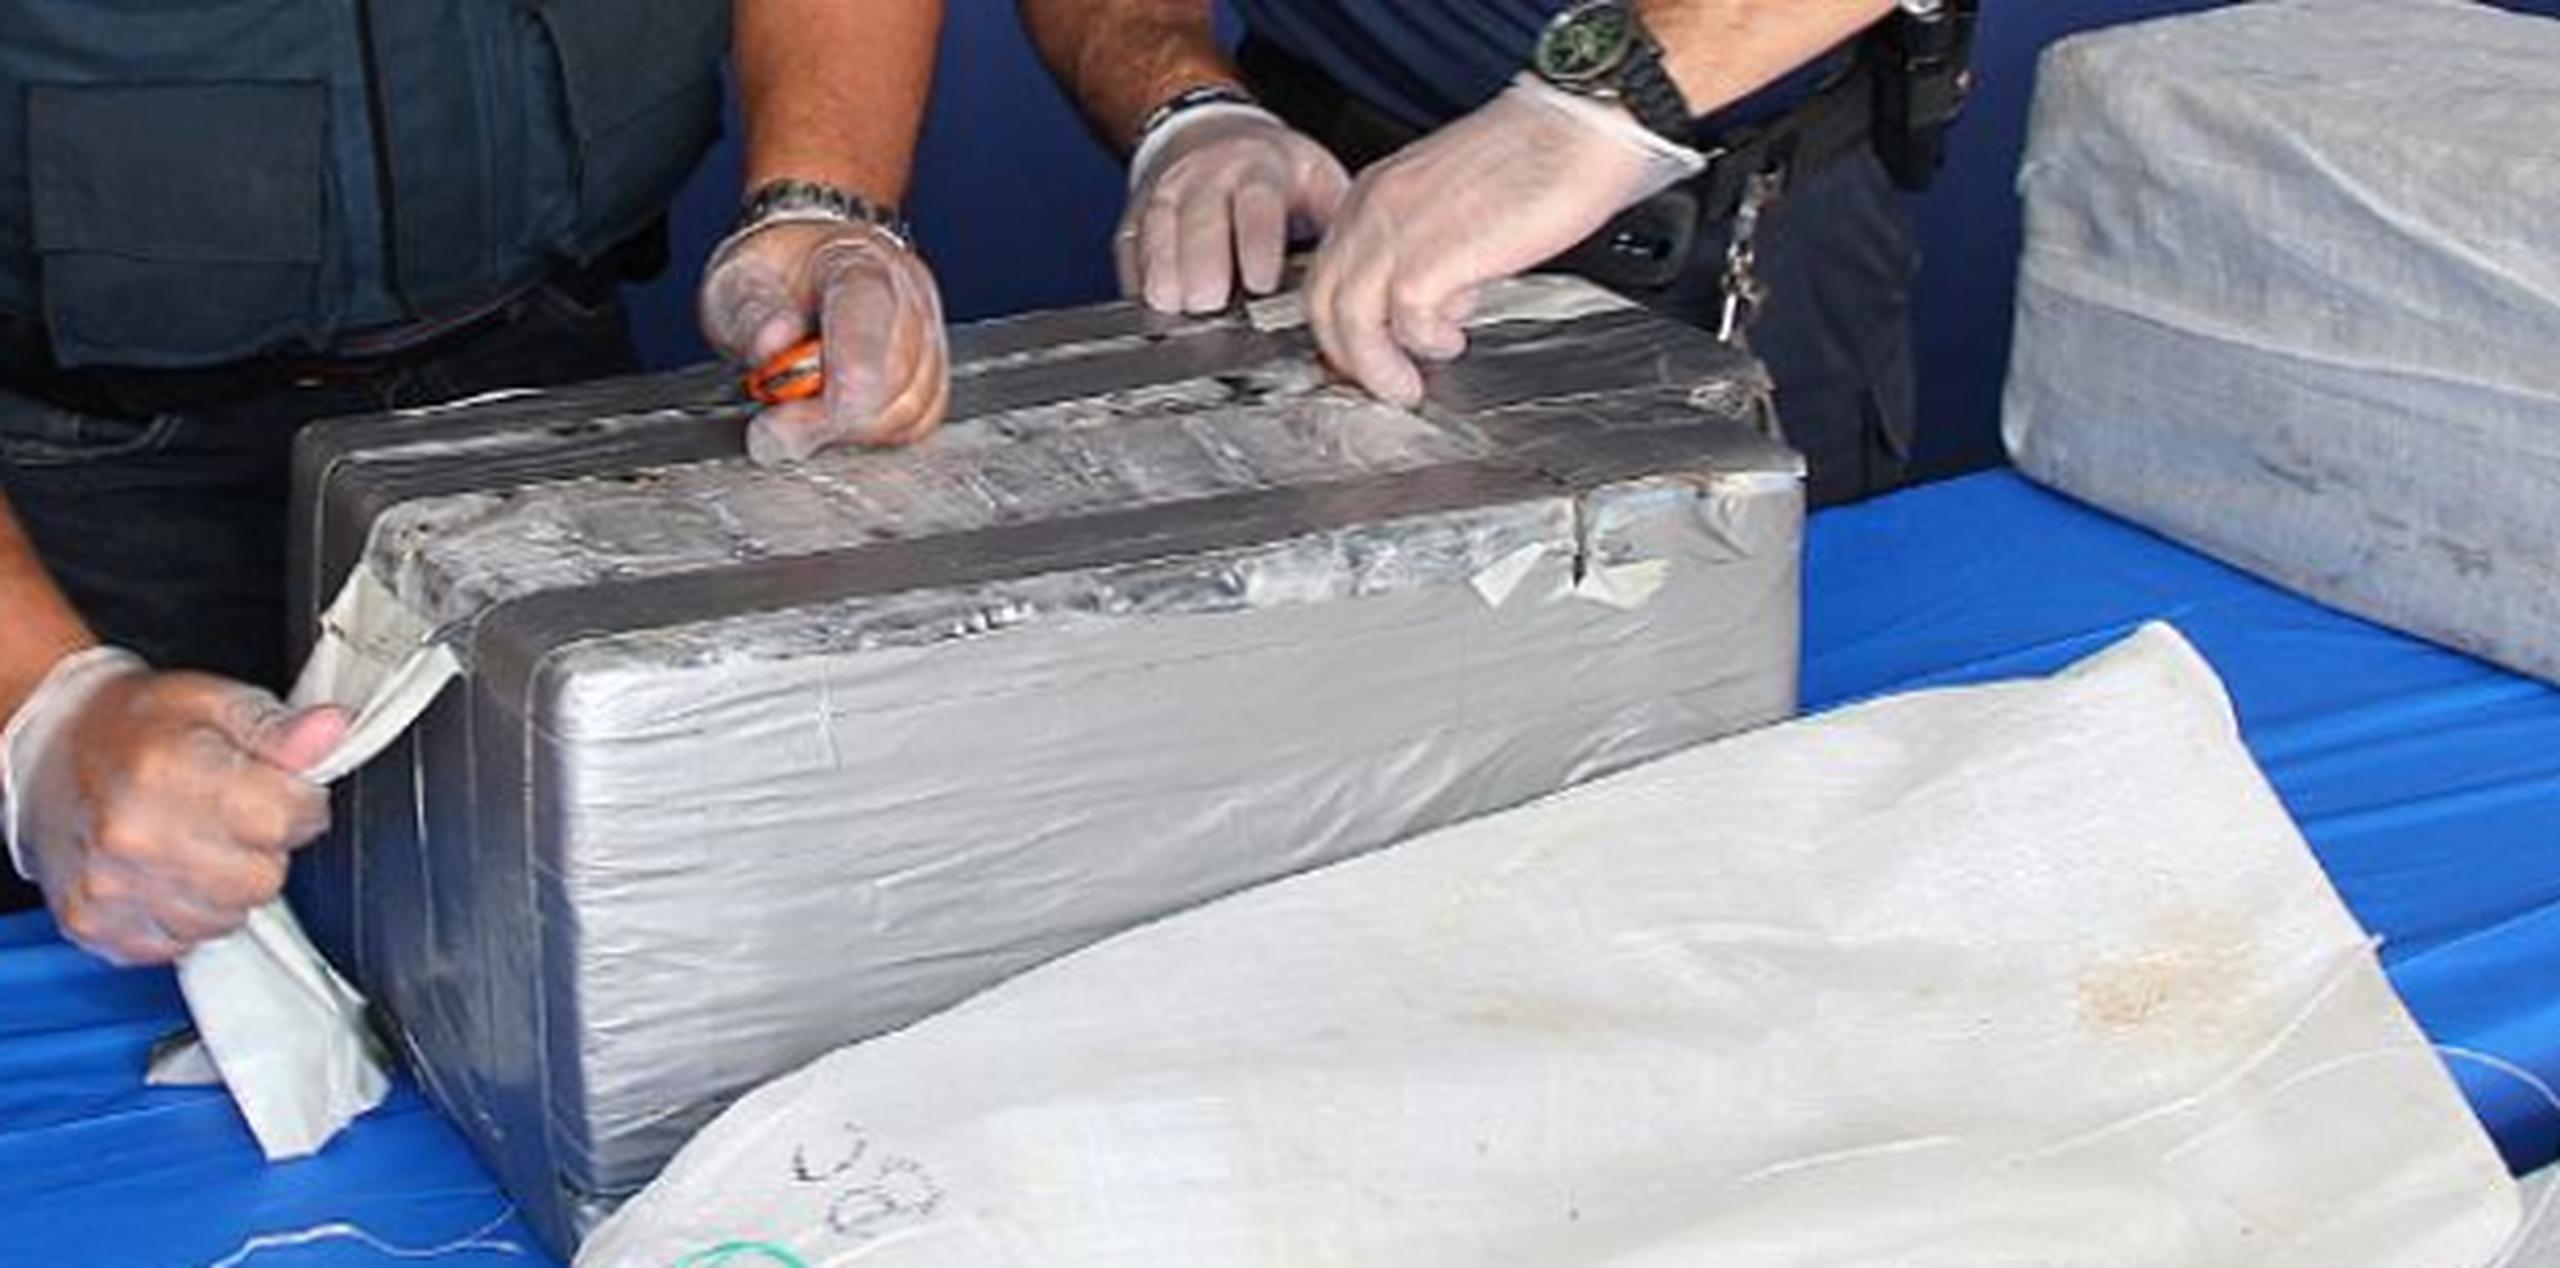 En un comunicado de prensa, el CPB indicó que un perro rastreador marcó unas piezas de maleta en una de las cabinas del barco y al ser abiertas se encontraron 10 paquetes de cocaína. (Archivo)